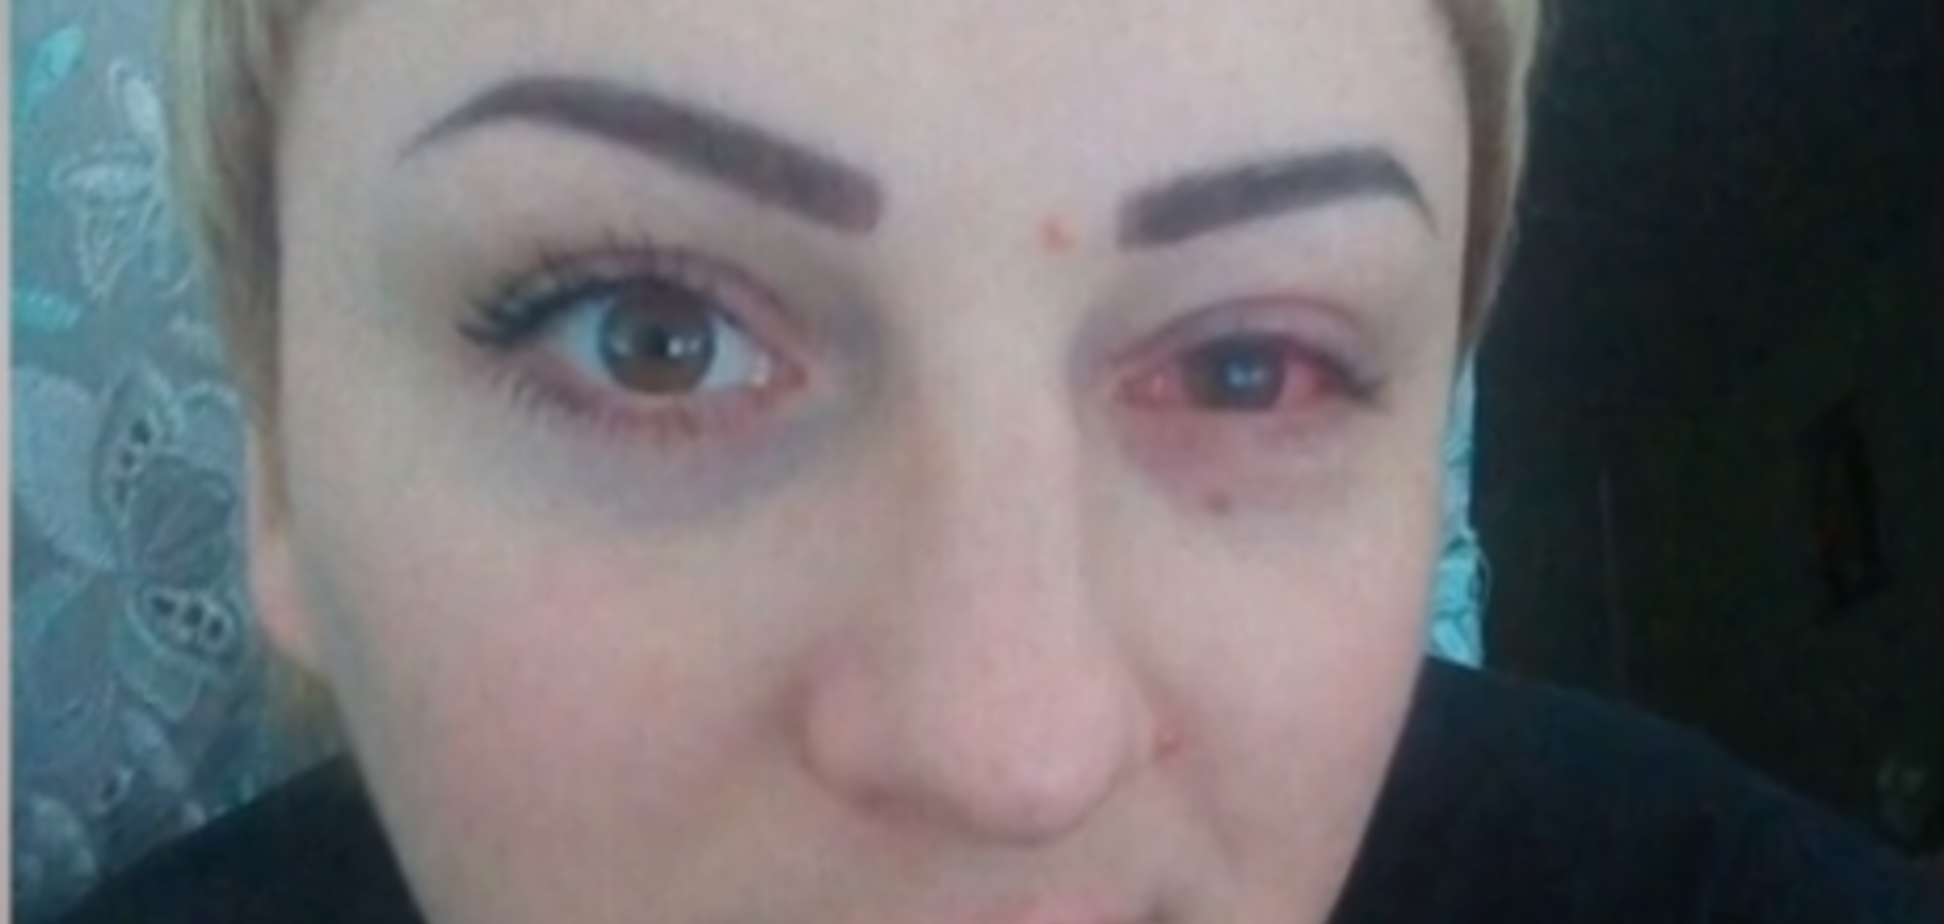  Эрозия и химический ожог: украинка ослепла на один глаз после косметический процедуры